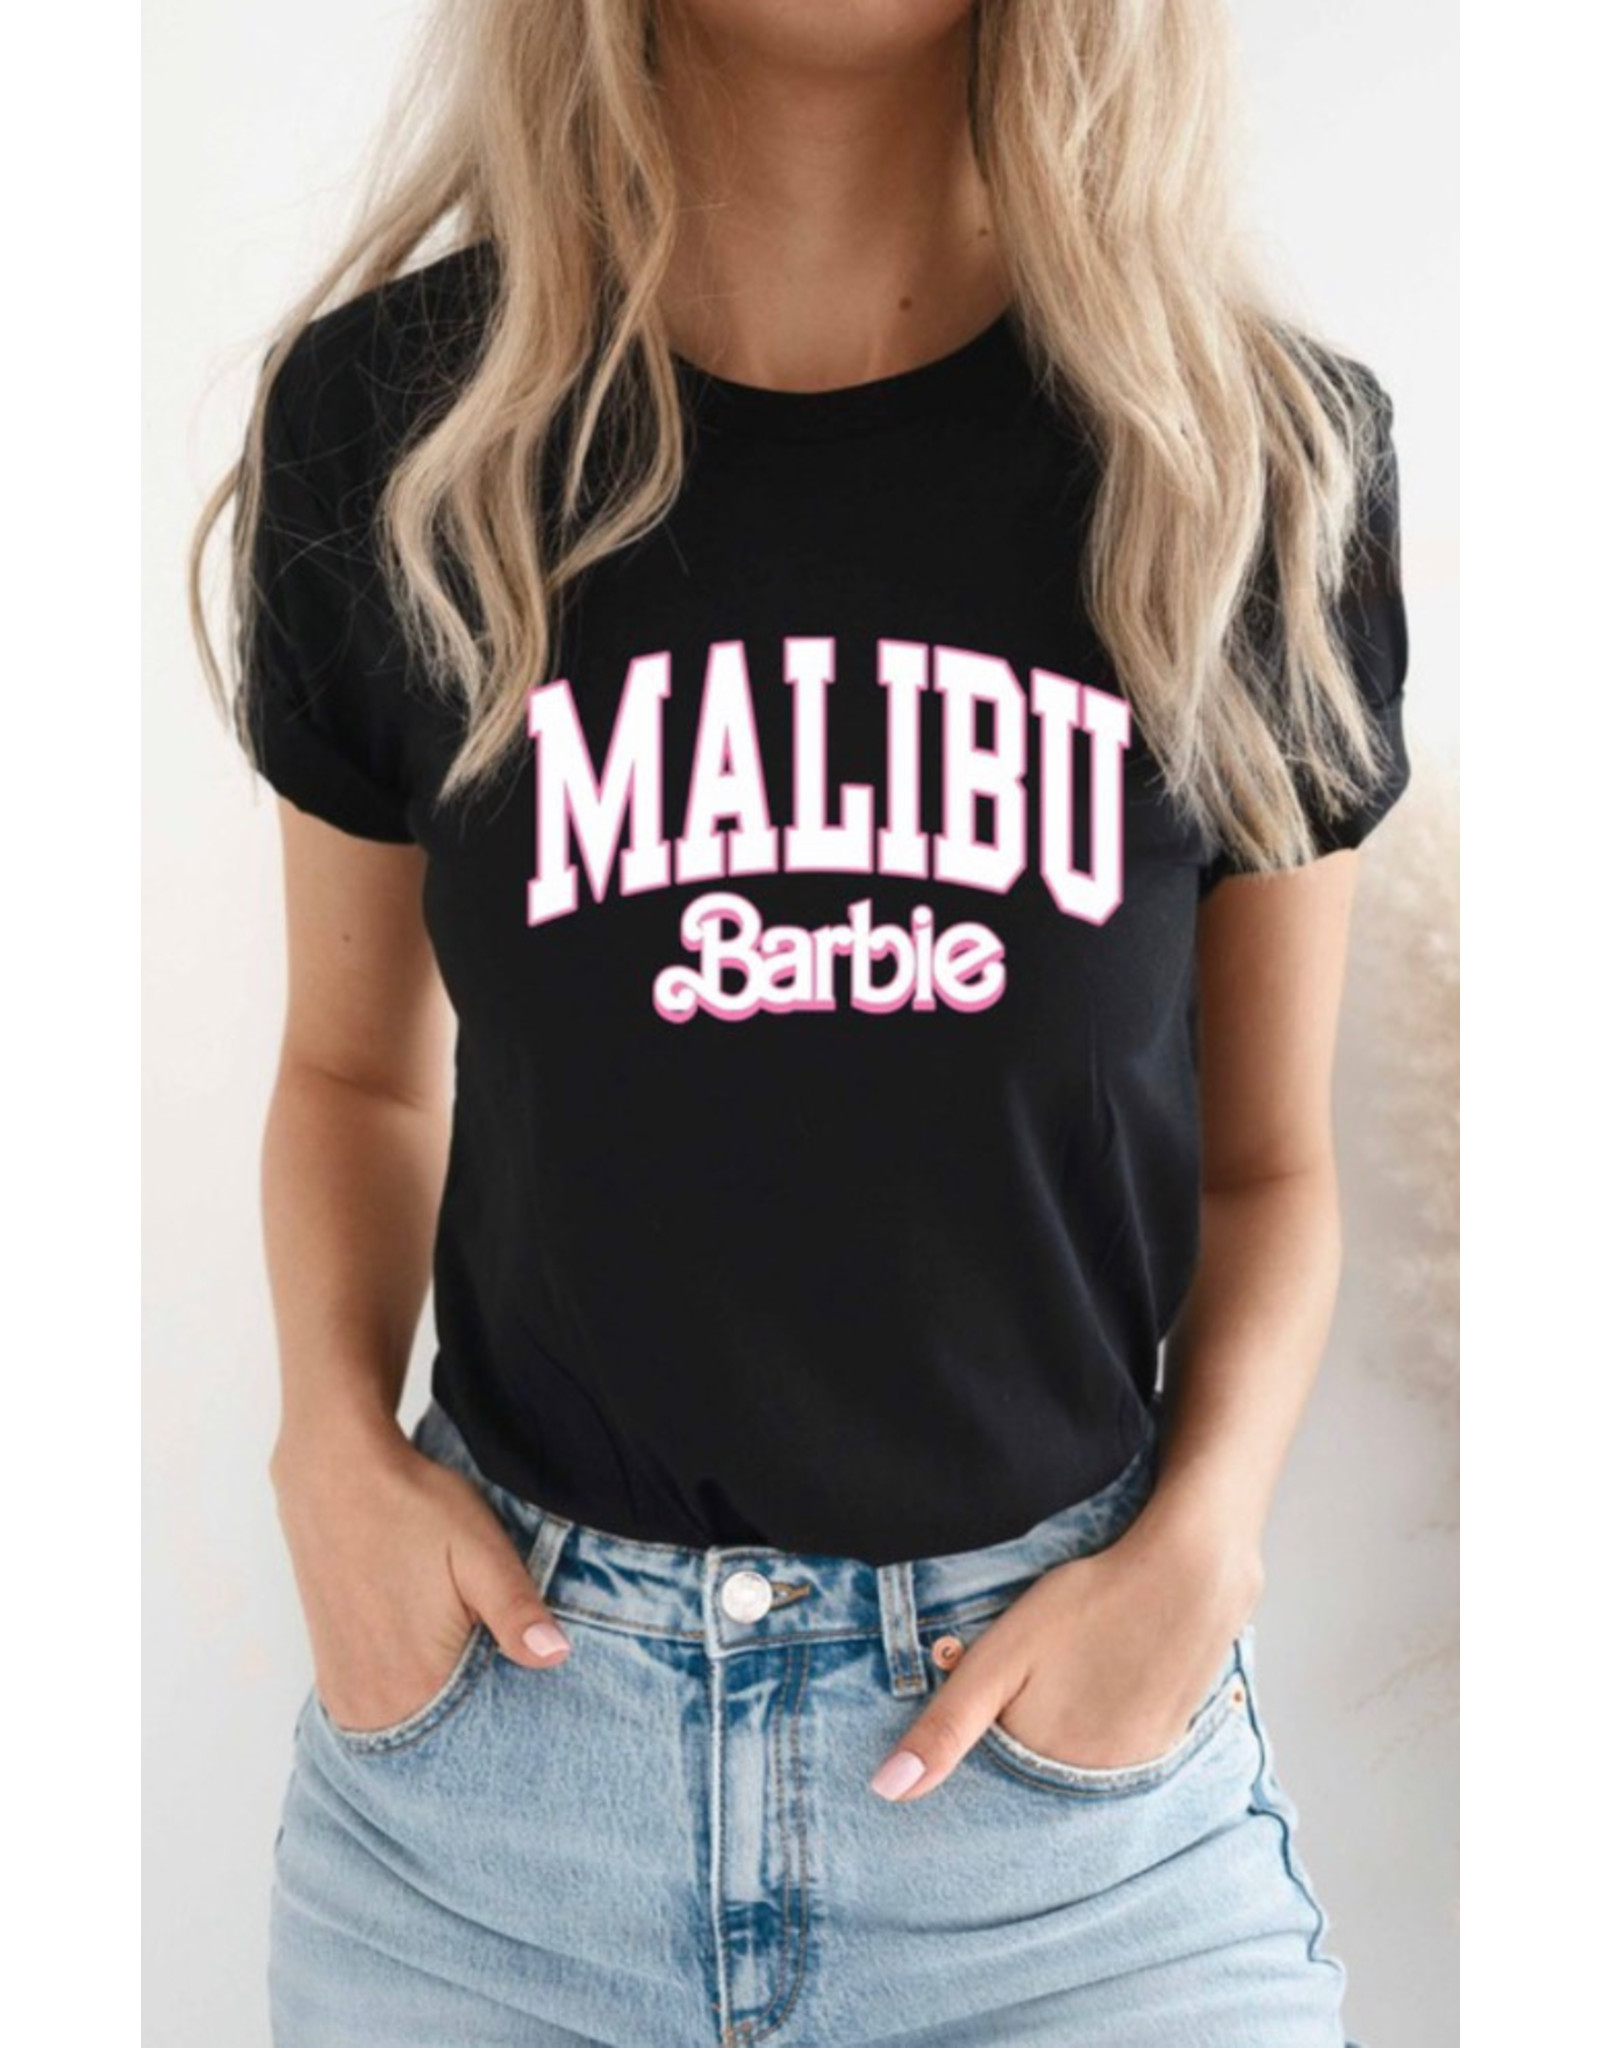 LATA Malibu Barbie Graphic Tee